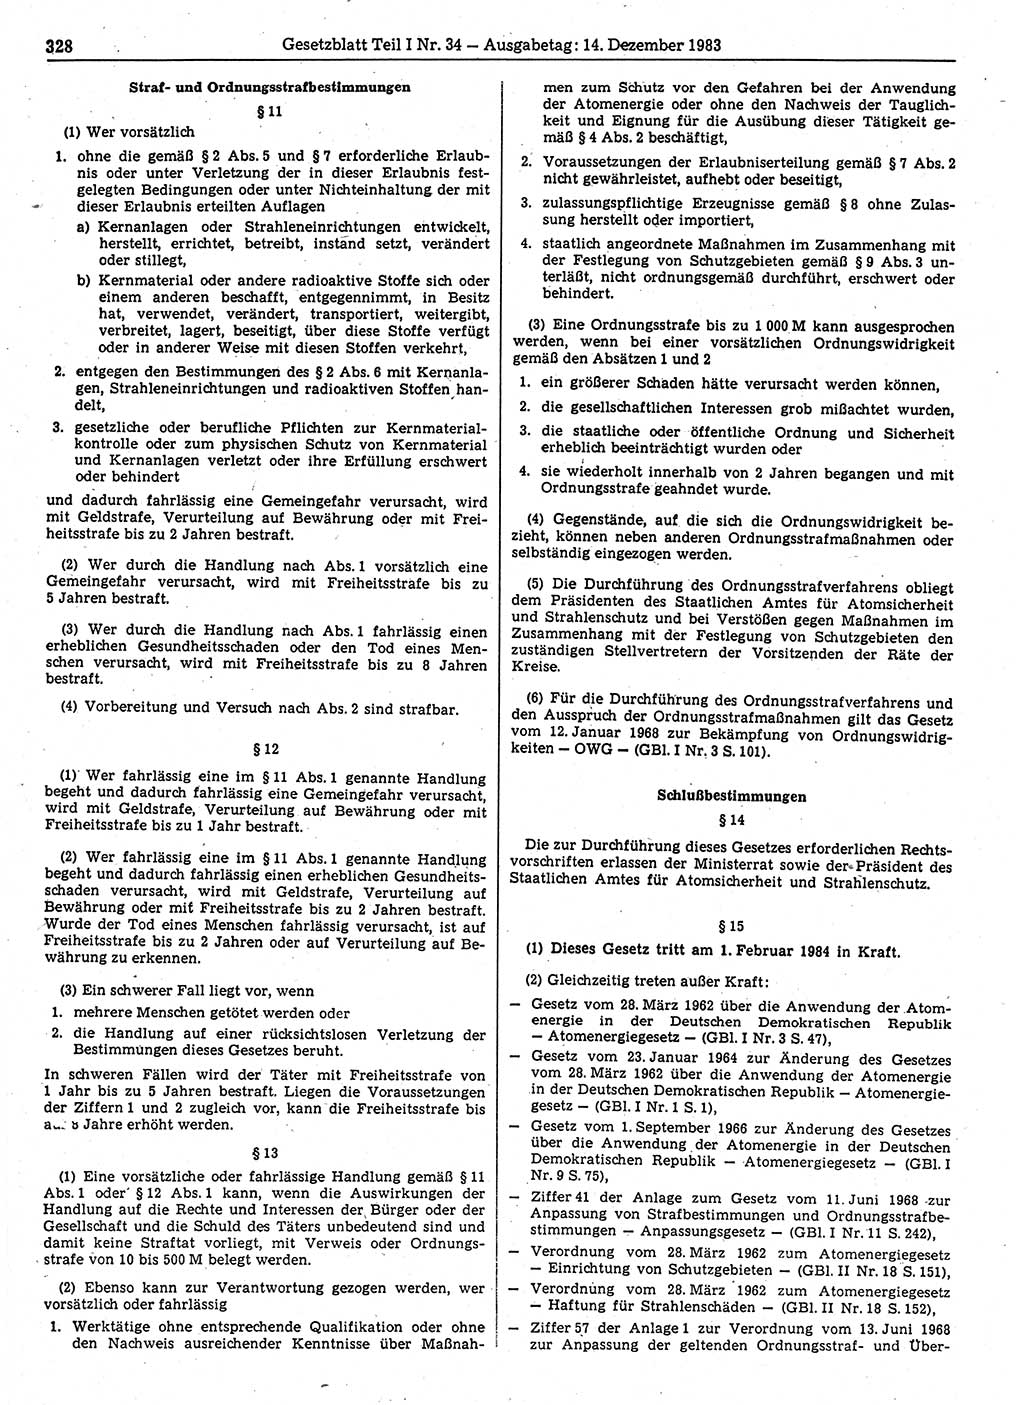 Gesetzblatt (GBl.) der Deutschen Demokratischen Republik (DDR) Teil Ⅰ 1983, Seite 328 (GBl. DDR Ⅰ 1983, S. 328)